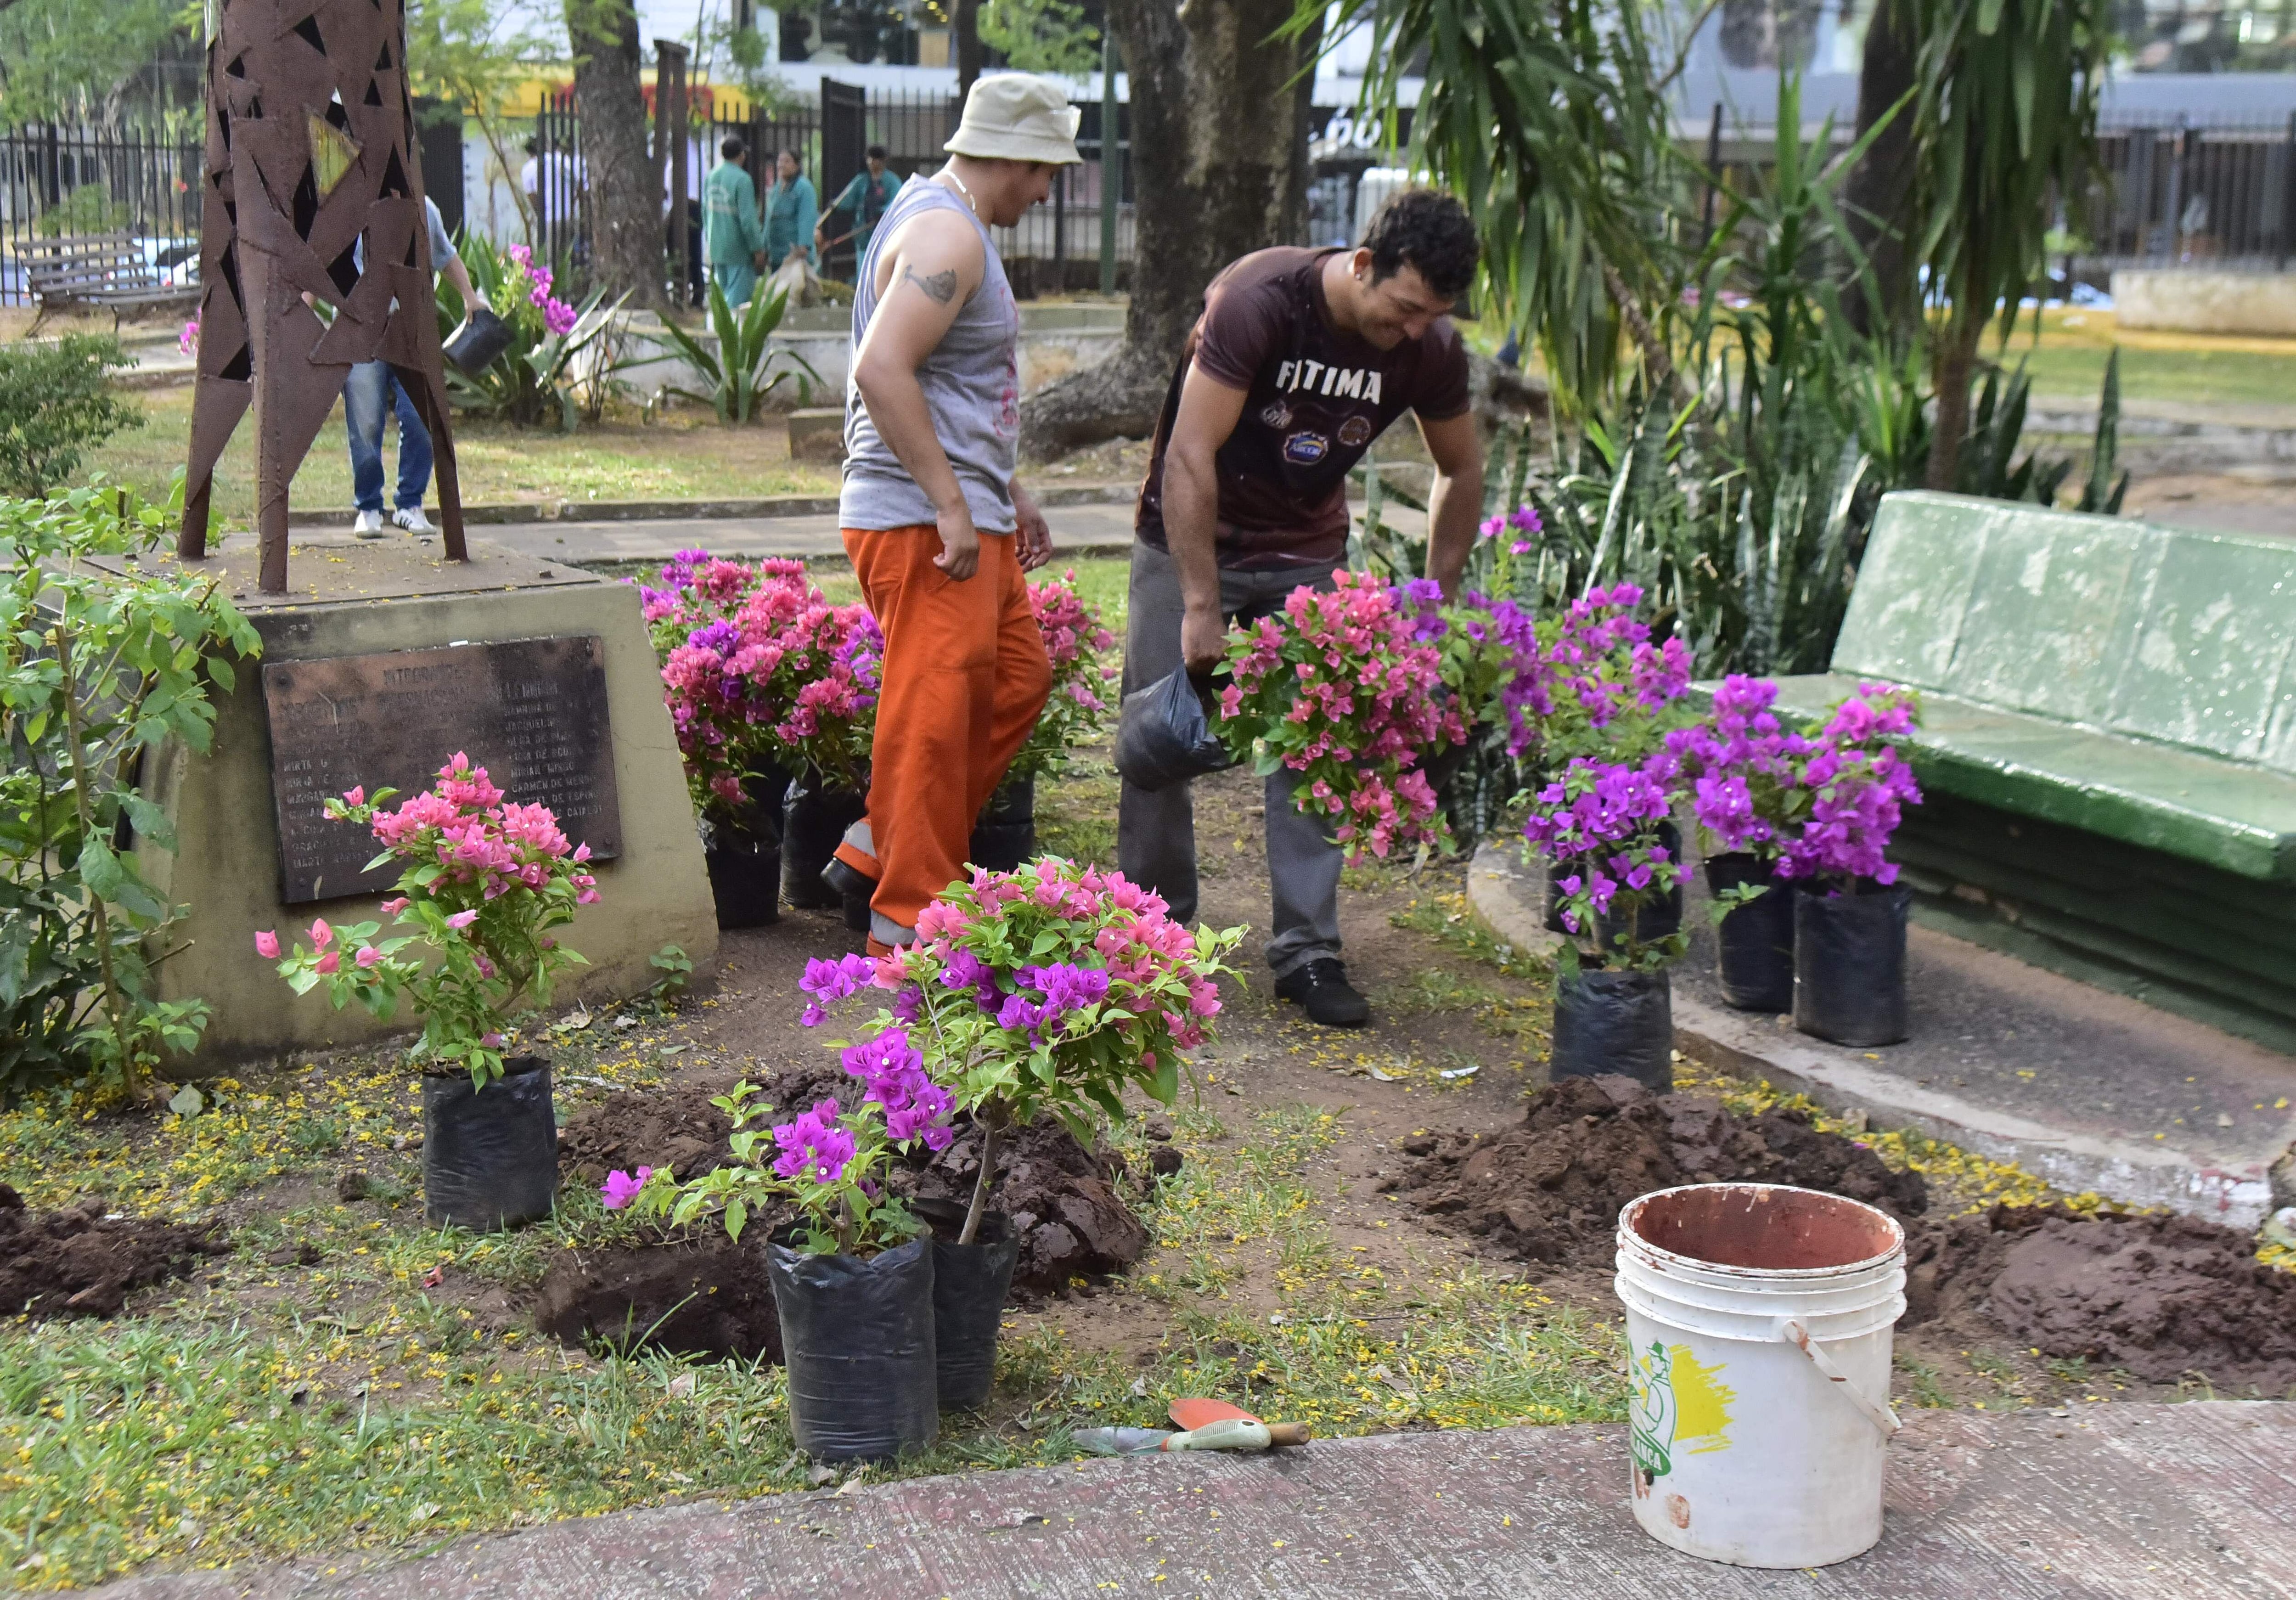 Se cultivaron al rededor de 40 plantines de Santa Rita en la plaza, que ofrecieron la belleza de sus flores color rosa claro y lila.